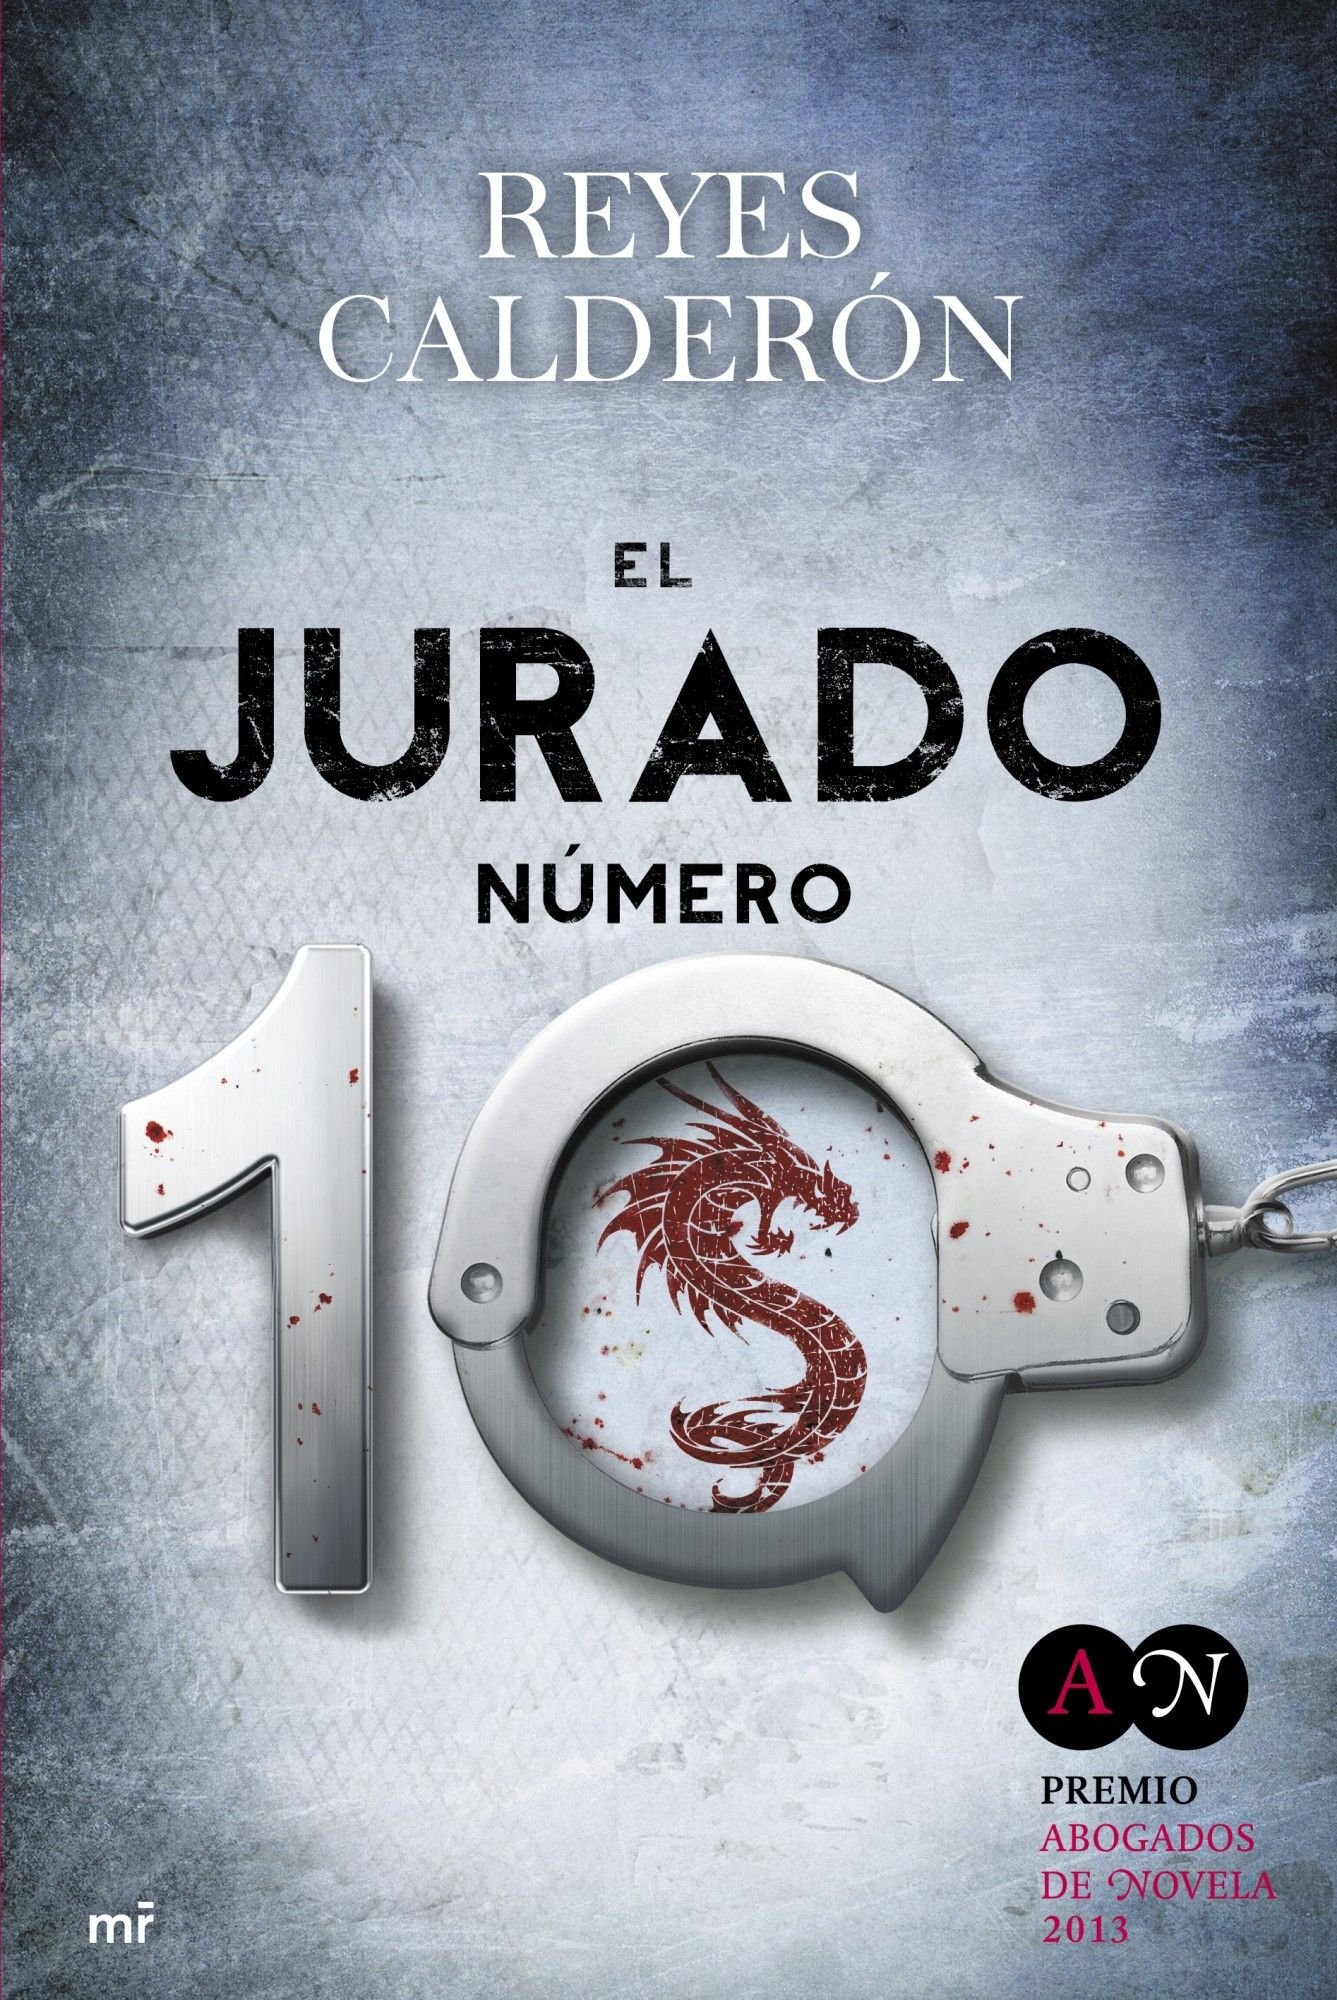 “El jurado número 10” de Reyes Calderón